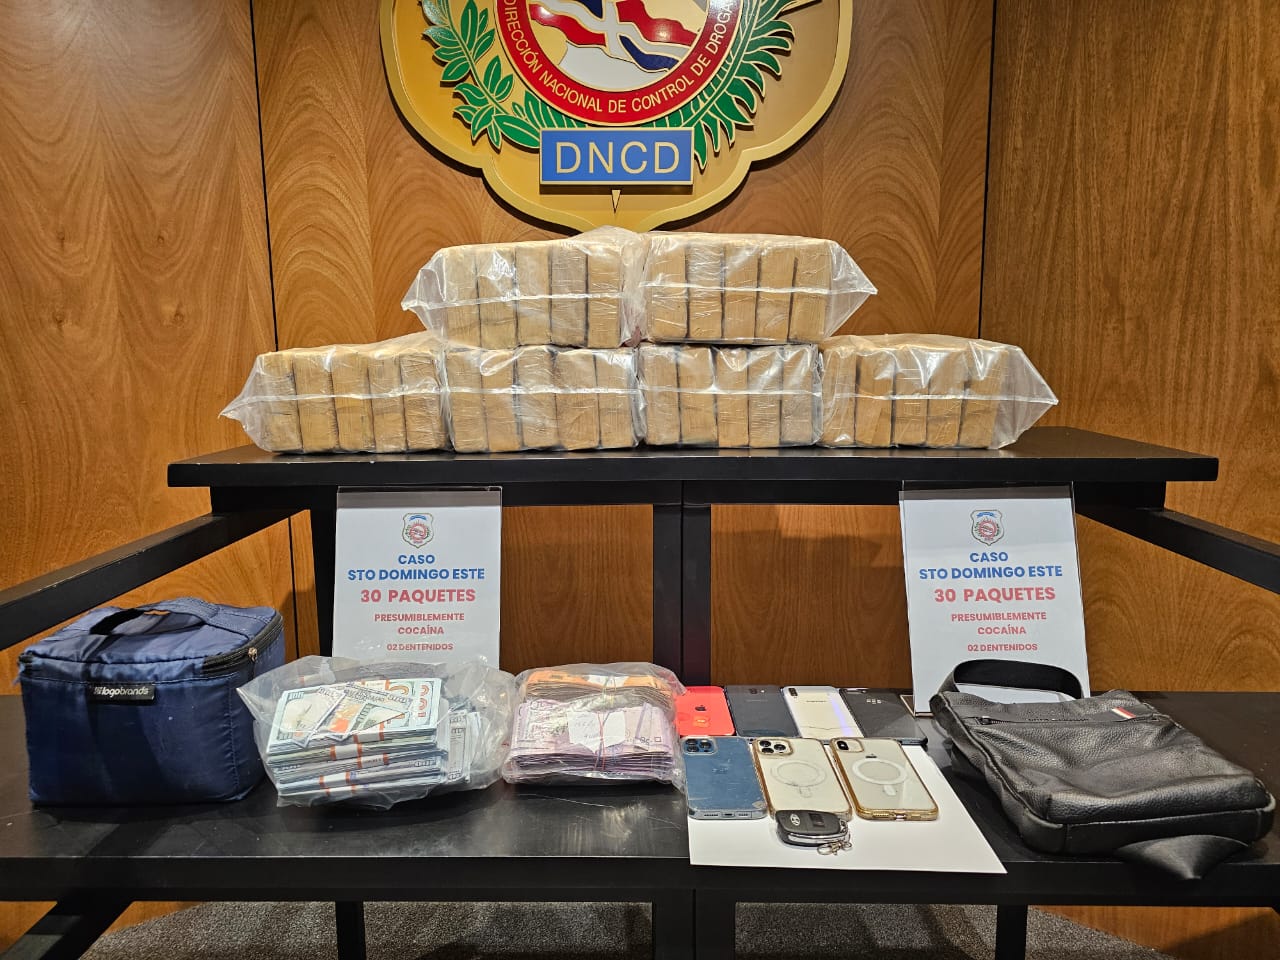 Incautan 30 paquetes presumiblemente cocaína en un operativo. (Foto: Fuente externa).